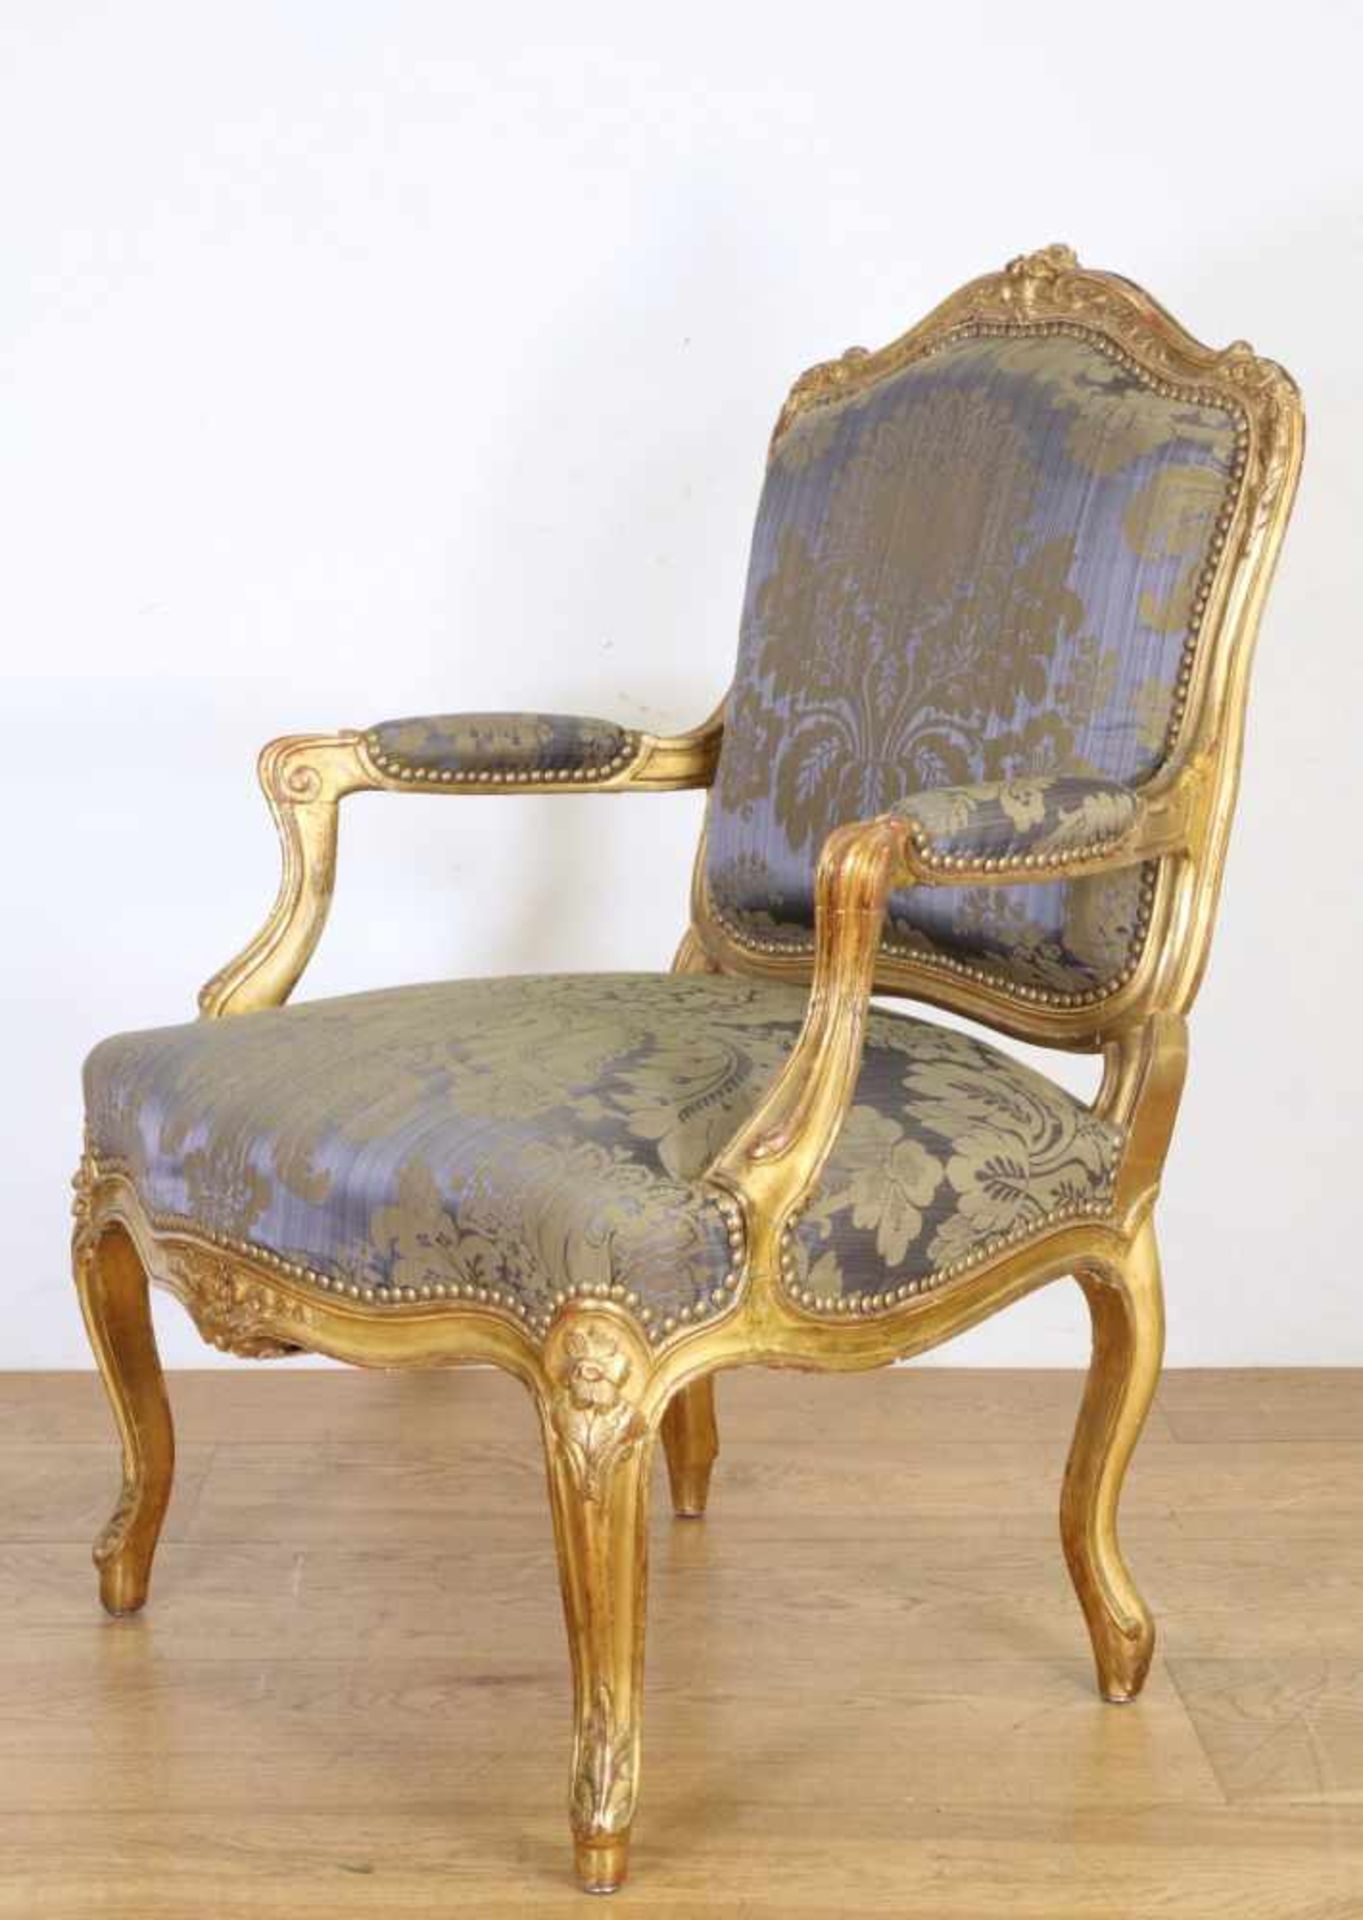 Verguld houten fauteuil in Louis XV-stijl, 19e eeuw,met blauwe damasten stoffering; Herkomst: Uit